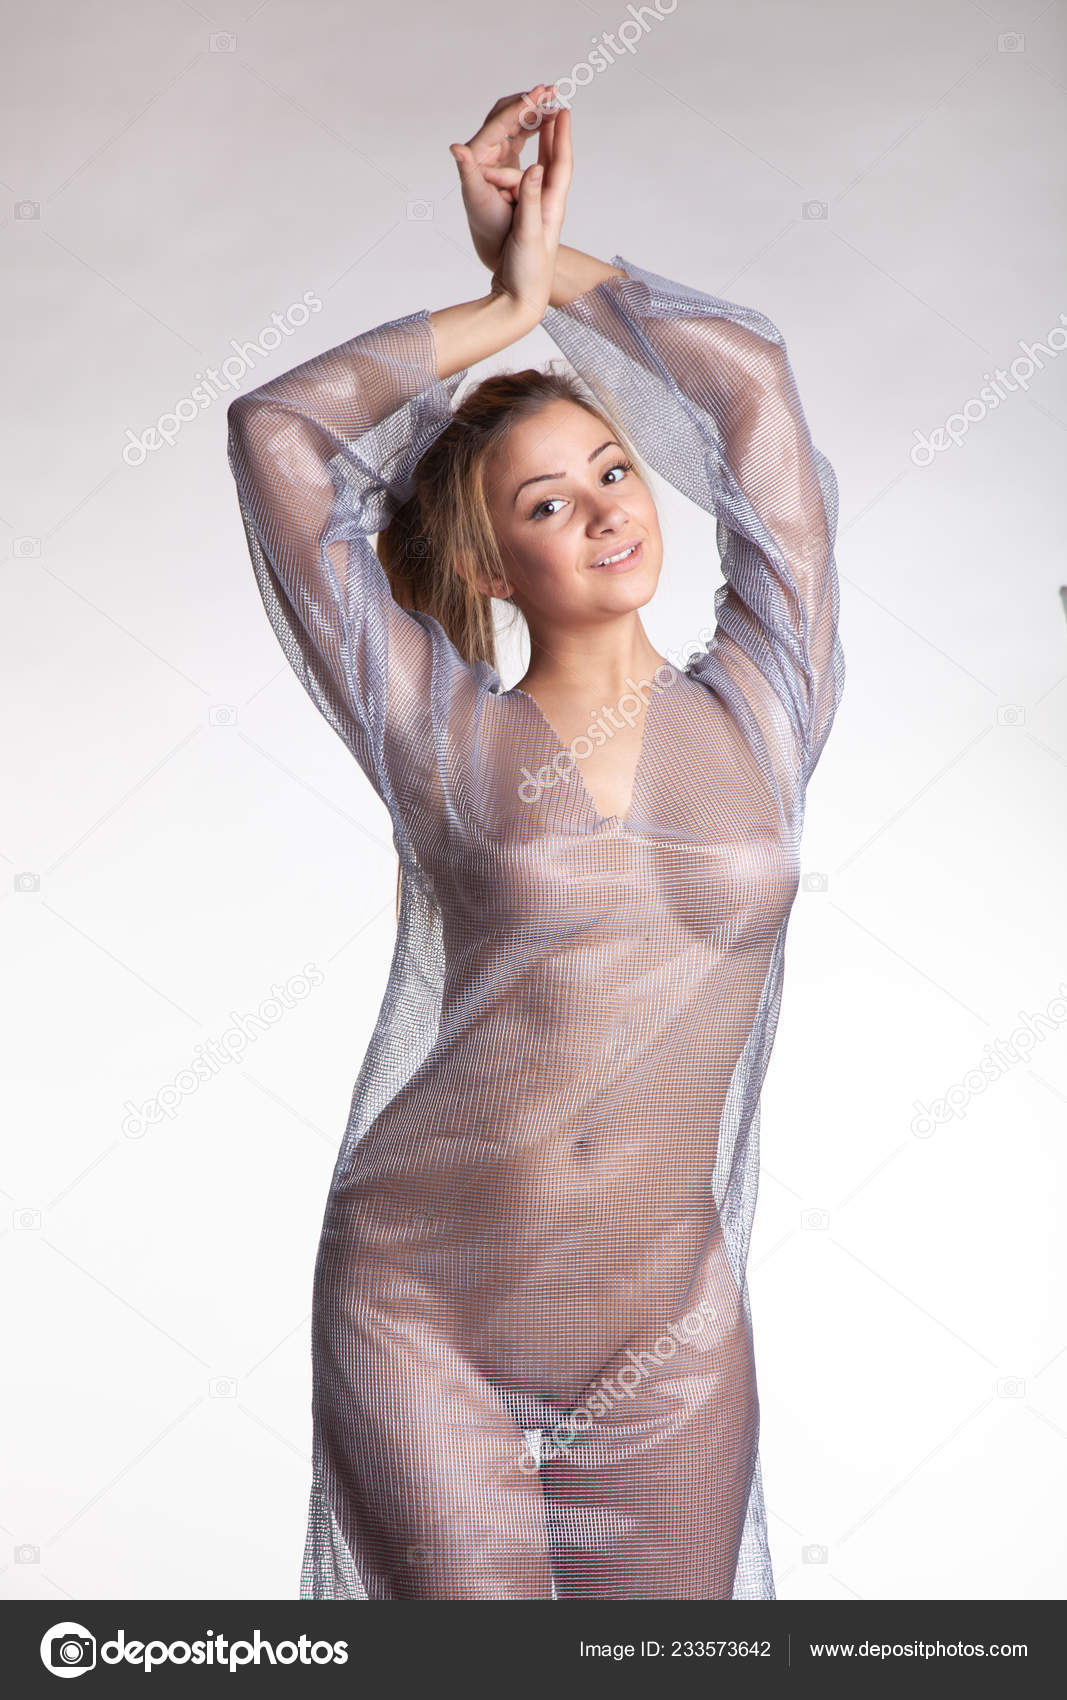 https://st4n.depositphotos.com/10086424/23357/i/1600/depositphotos_233573642-stock-photo-young-beautiful-girl-posing-nude.jpg